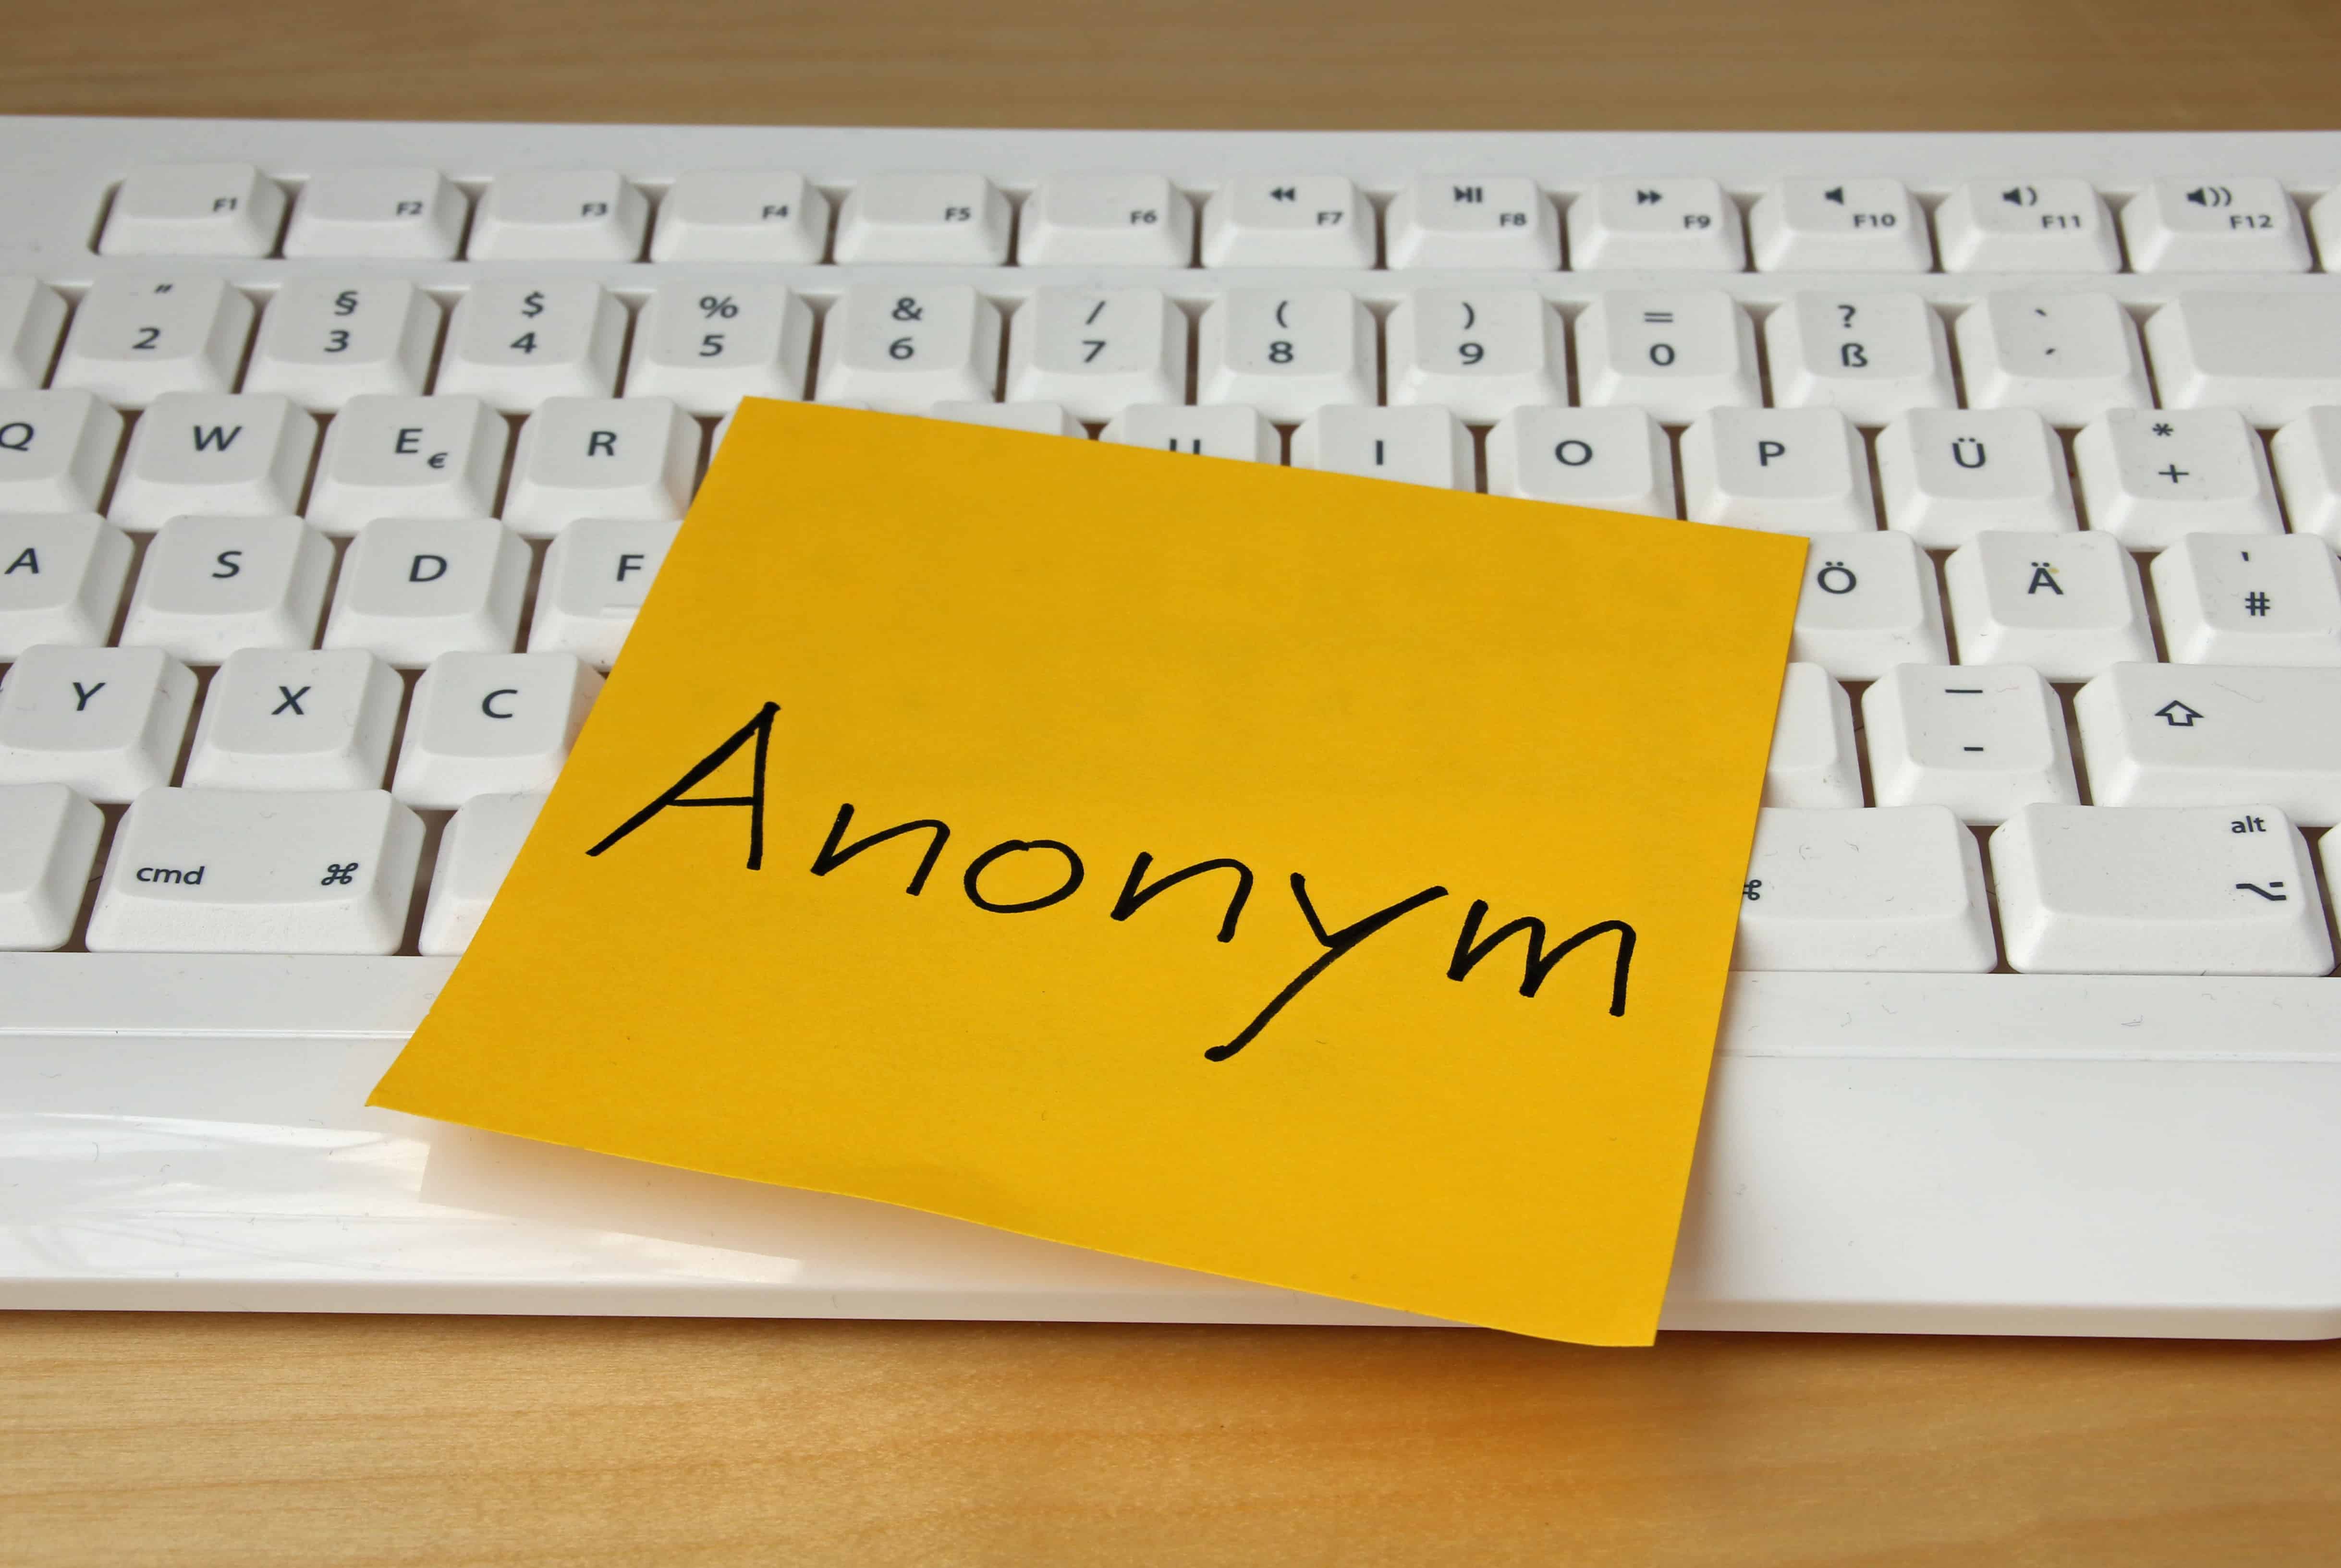 Eine weiße Tastatur mit einem orangenem Klebezettel darauf: Anonym